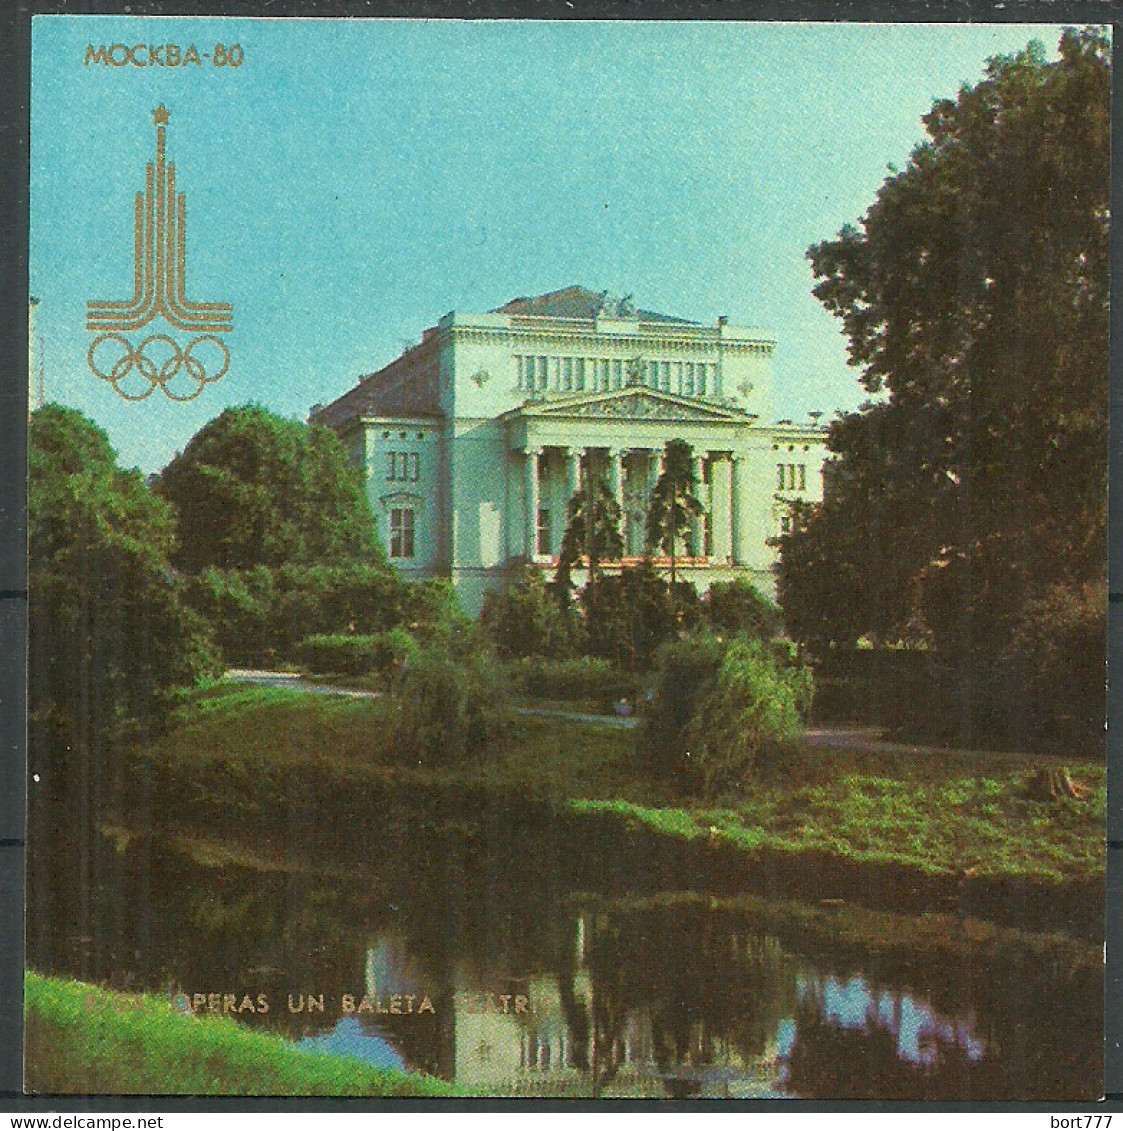 RUSSIA Latvia 1978 Special Matchbox Label 93x93 Mm (catalog # 392) - Scatole Di Fiammiferi - Etichette